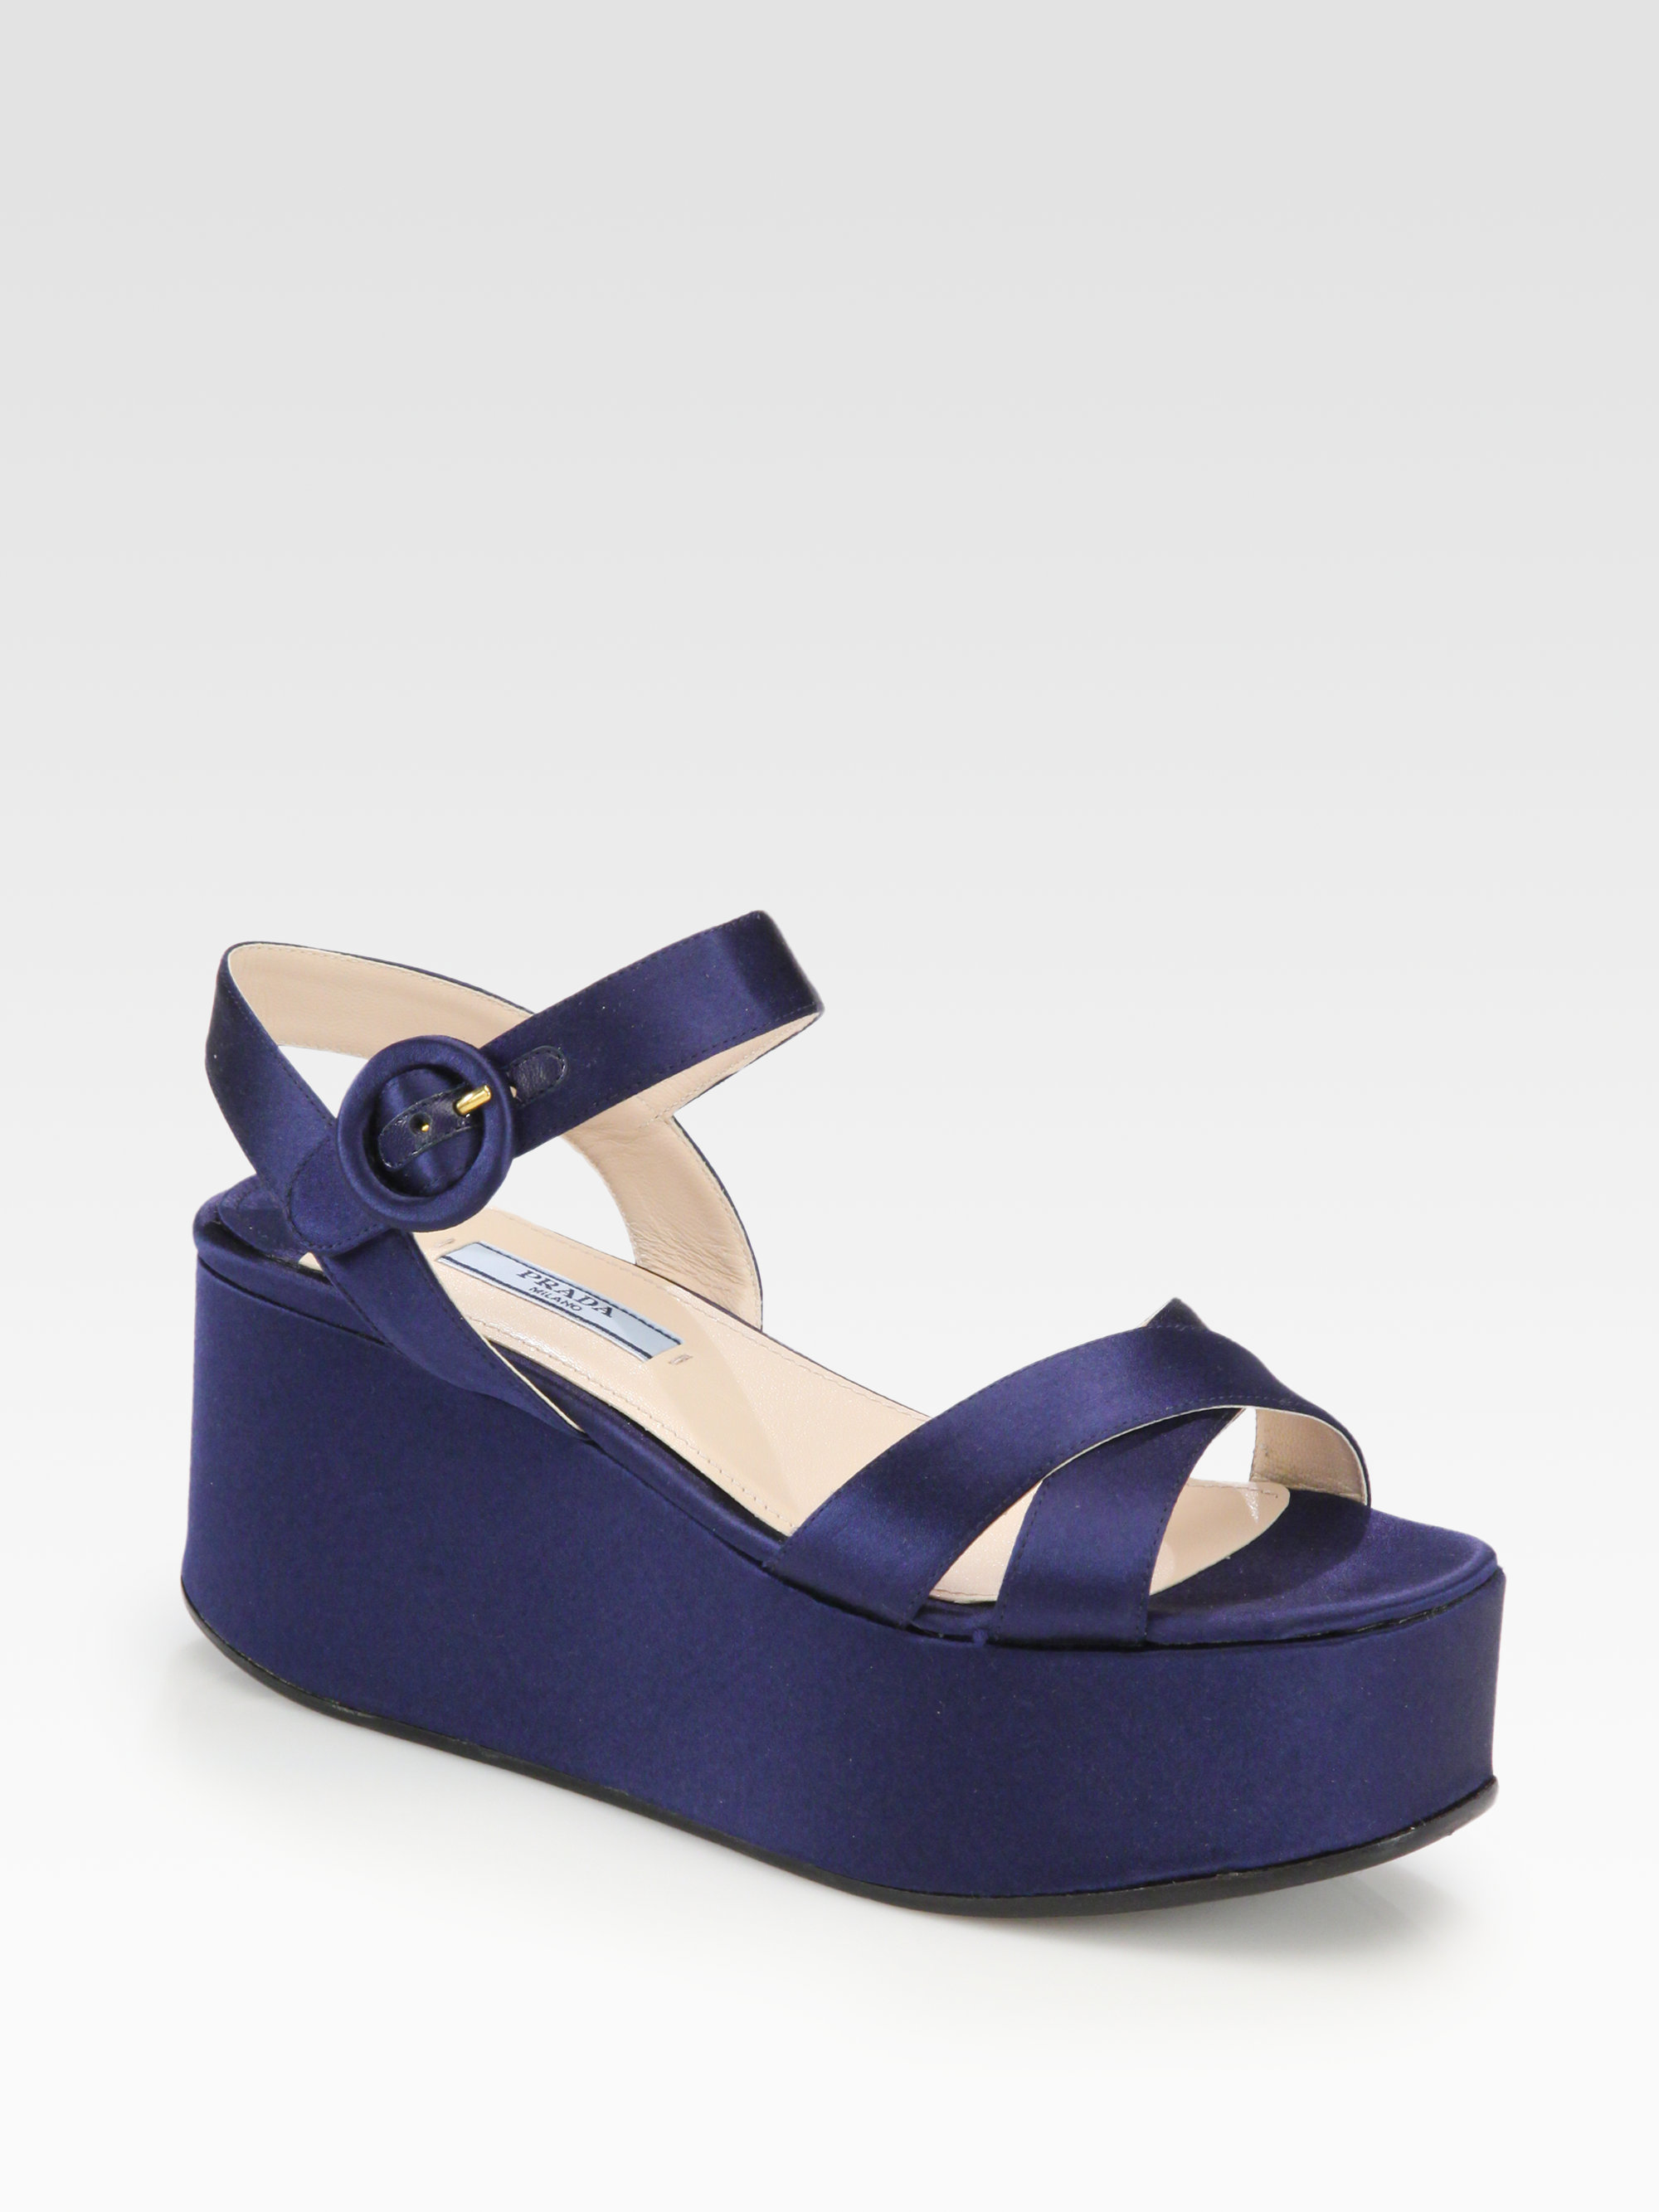 Prada Satin Platform Wedge Sandals in Blue - Lyst